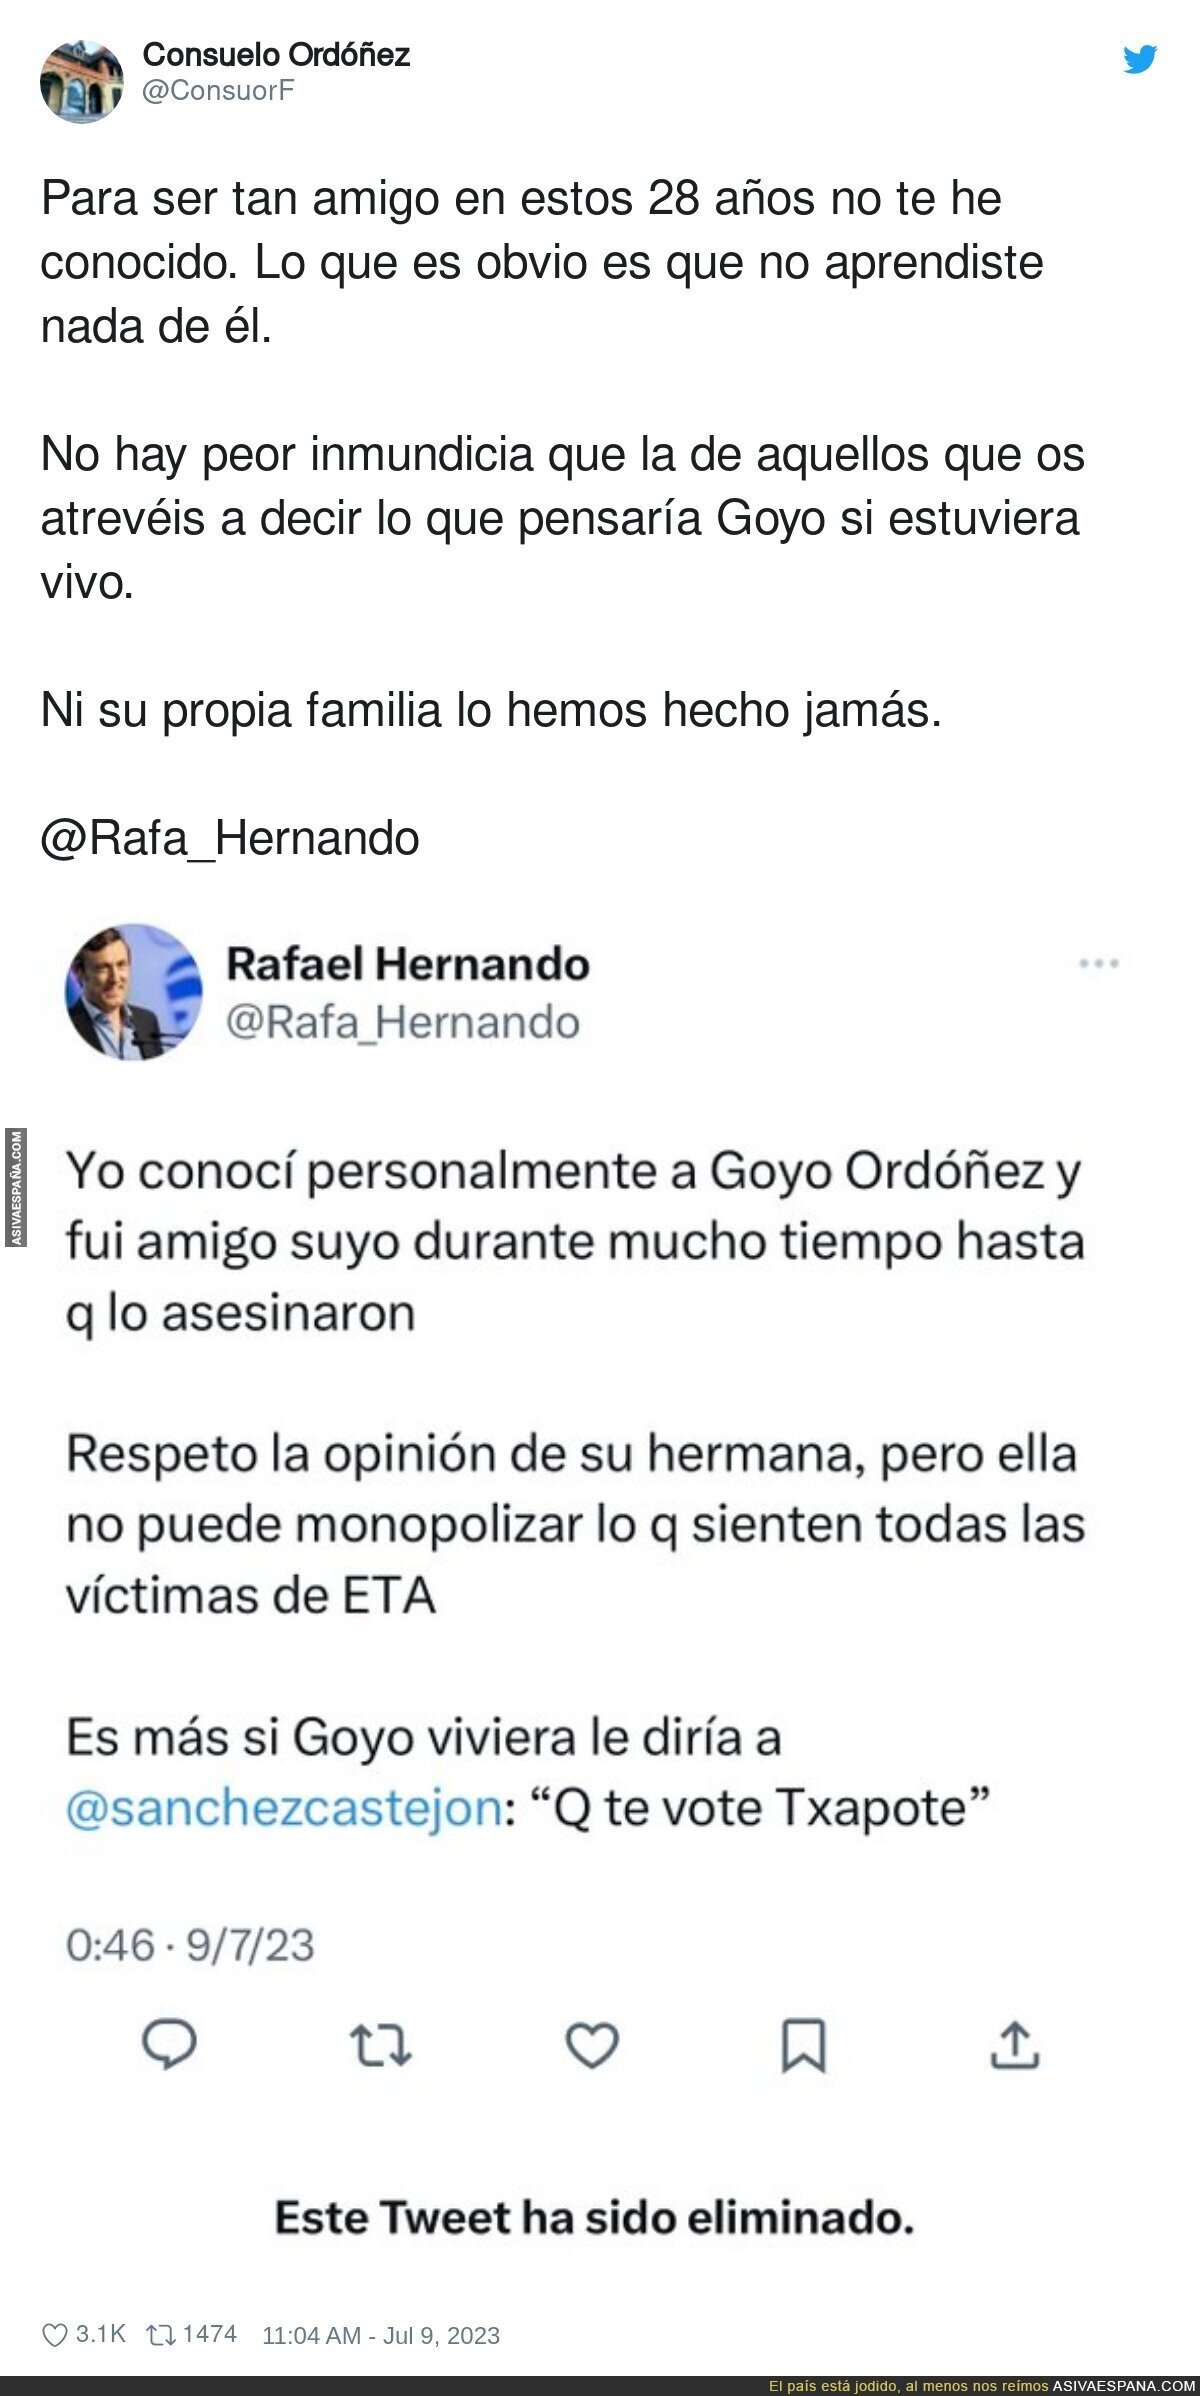 Las mentiras de Rafael Hernando tiene las patas muy cortas